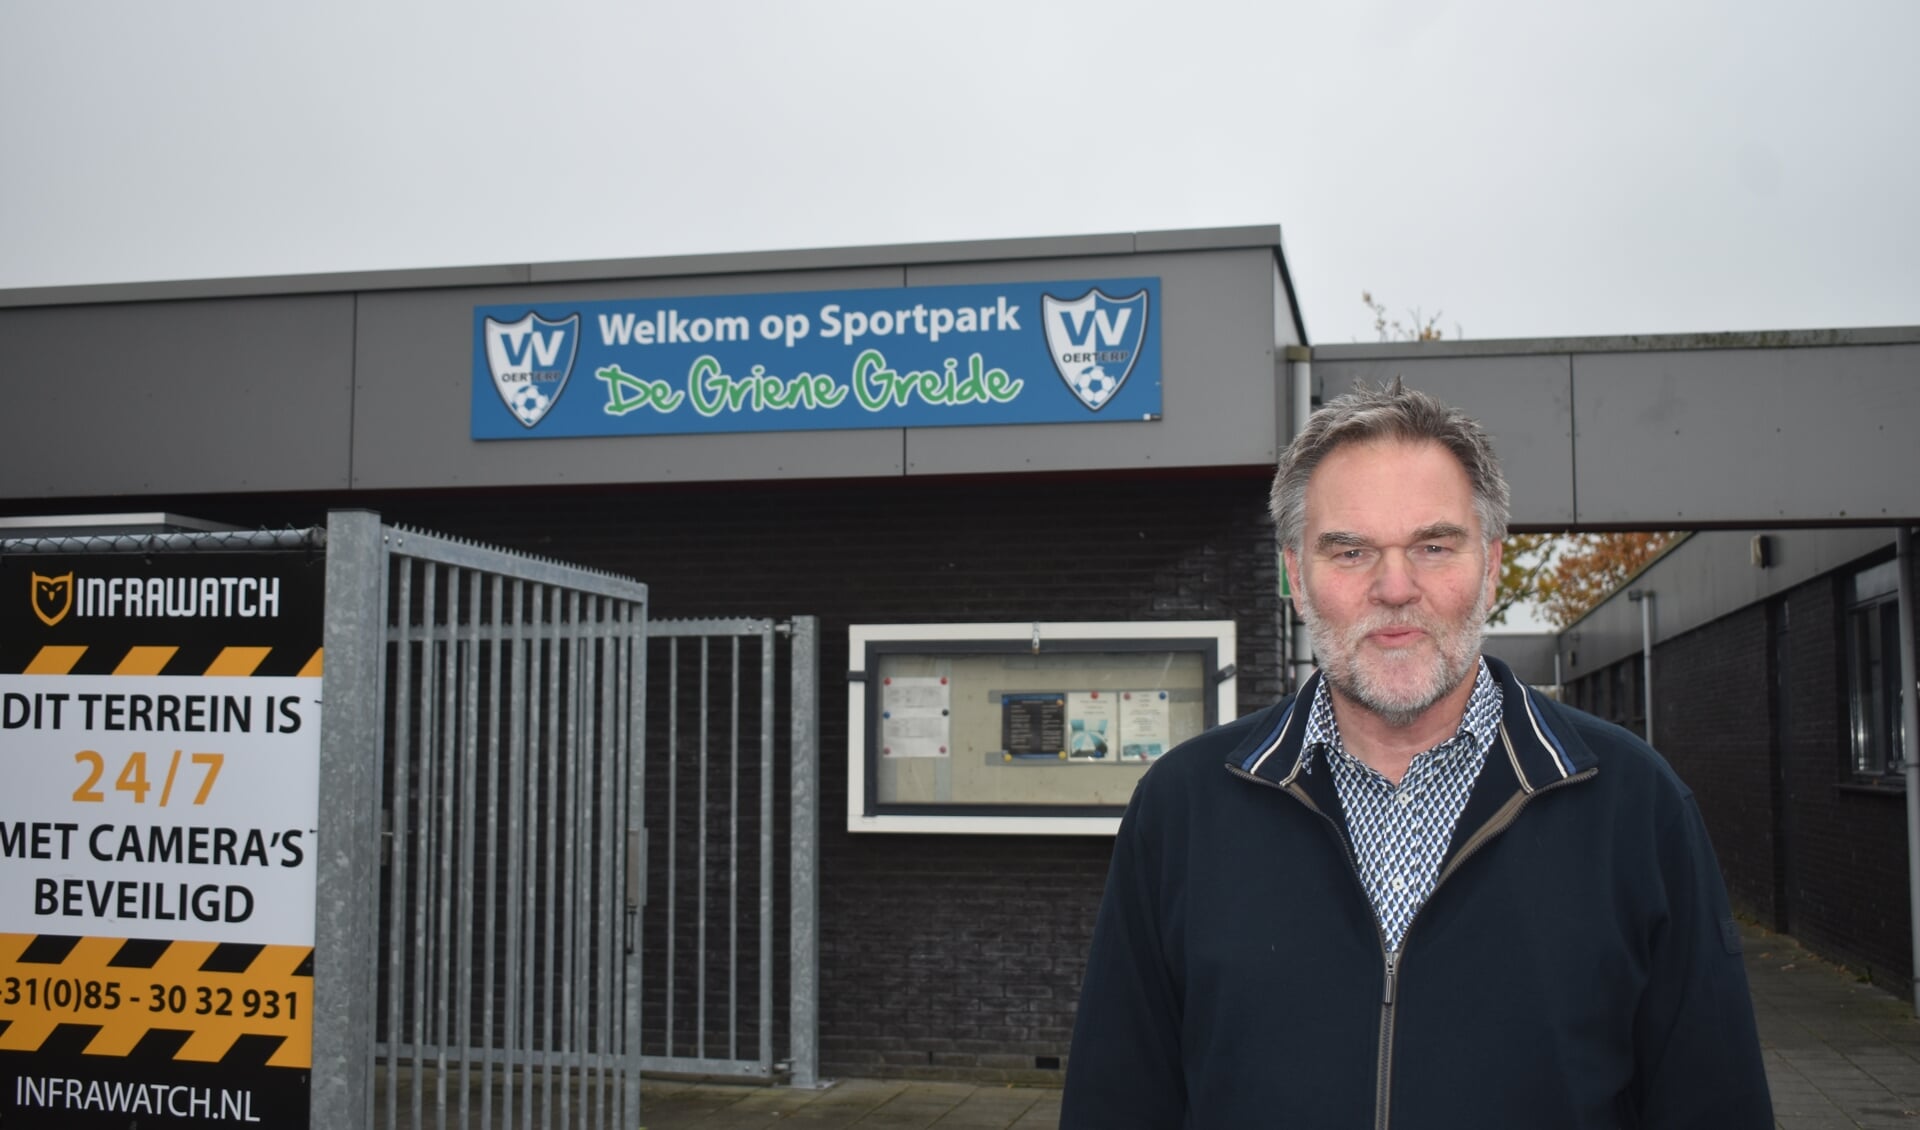 Wethouder Durk Durksz voor het sportcomplex De Griene Greide in Ureterp.